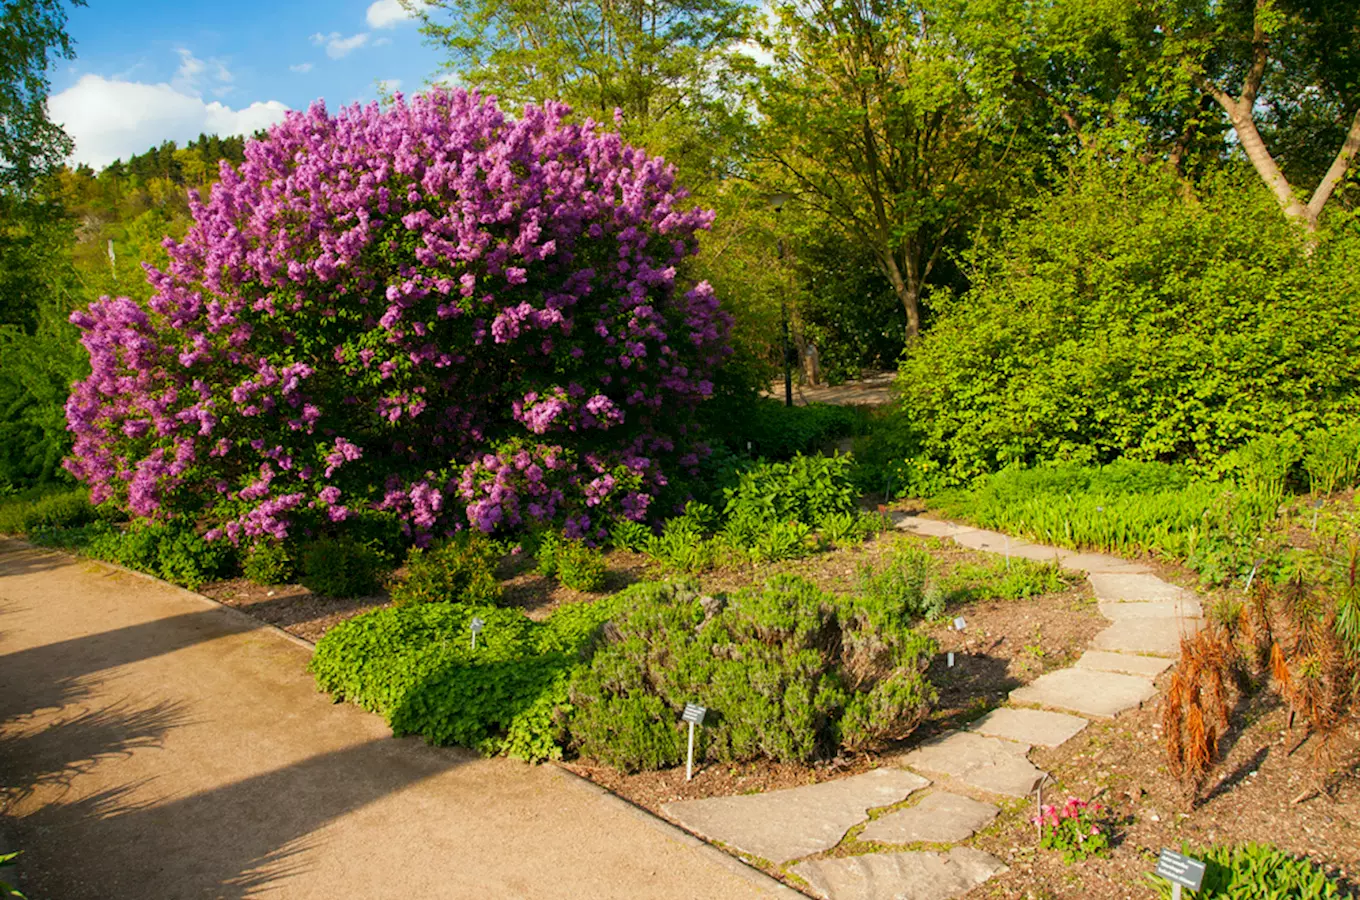 Oslavte První máj v trojské botanické zahradě polibkem i výpravou za motýly